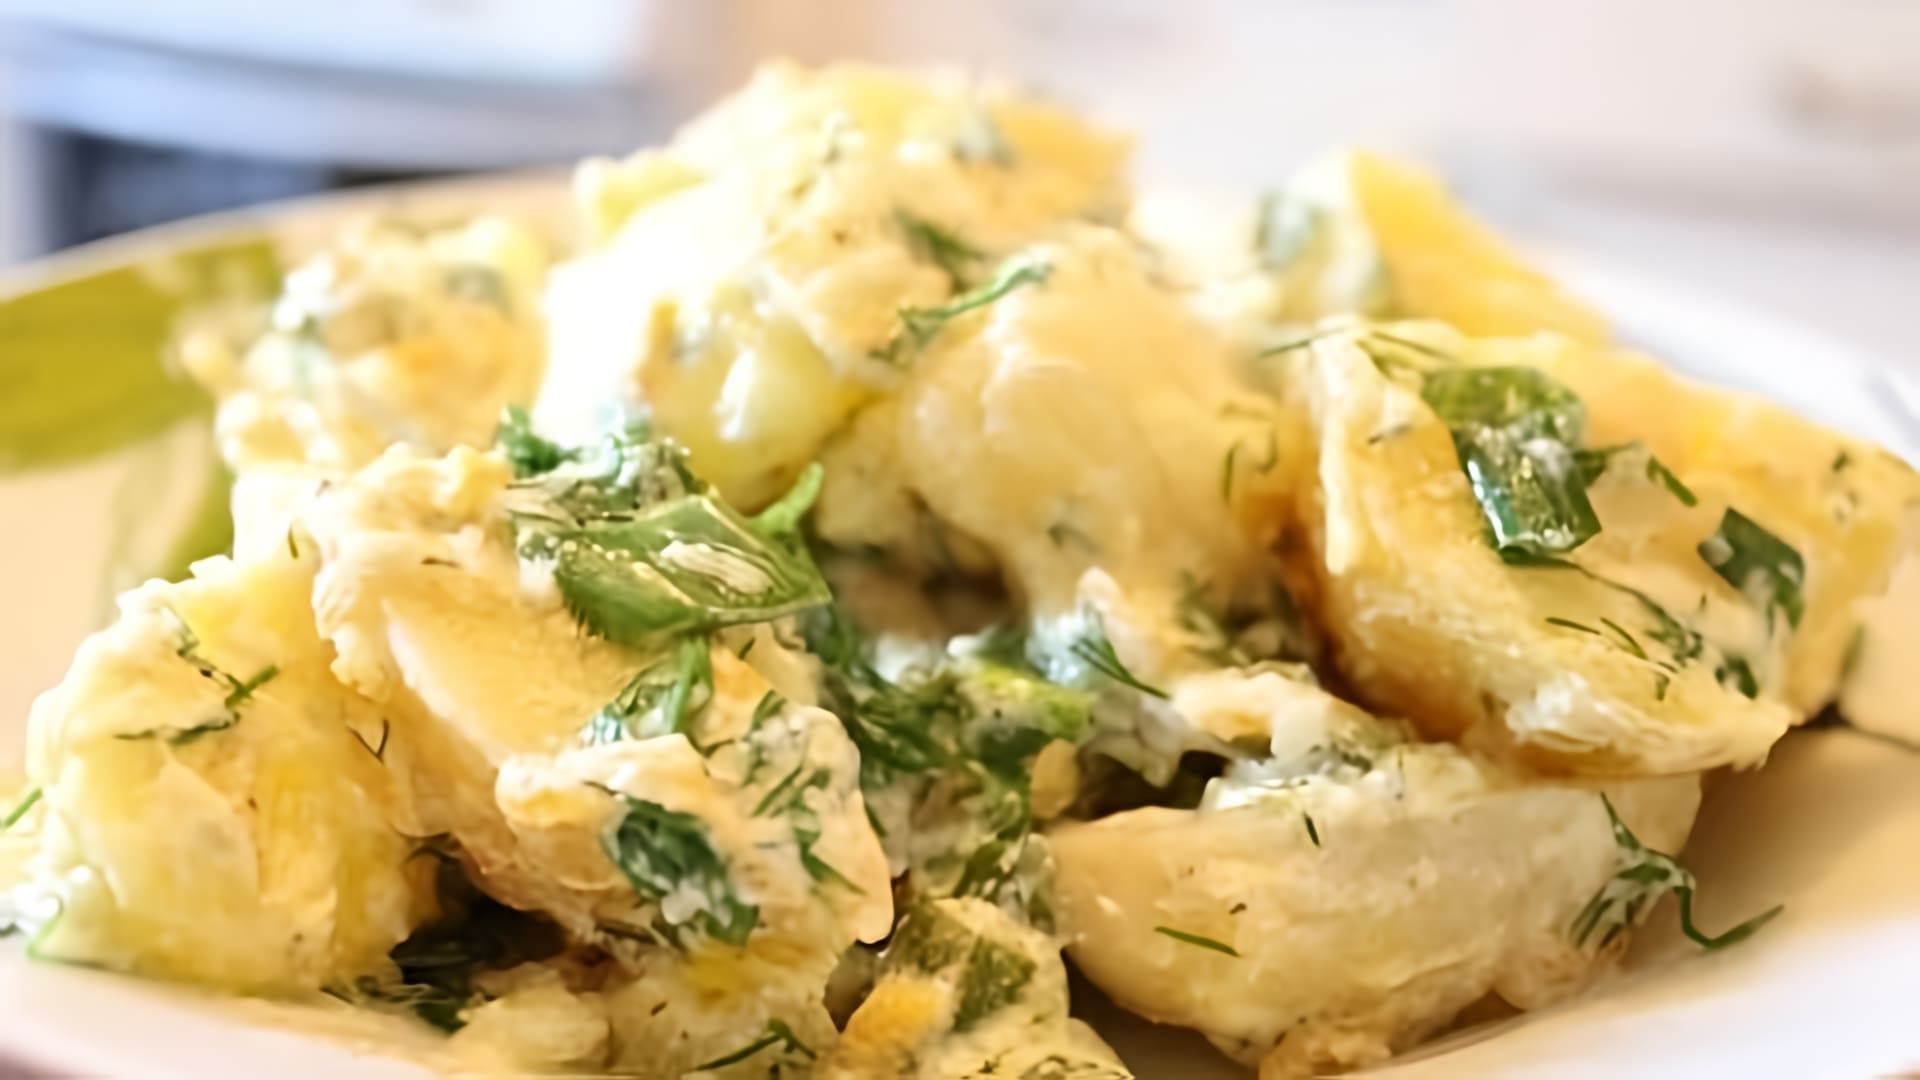 В этом видео демонстрируется простой рецепт приготовления картофеля в духовке со сметаной и сыром